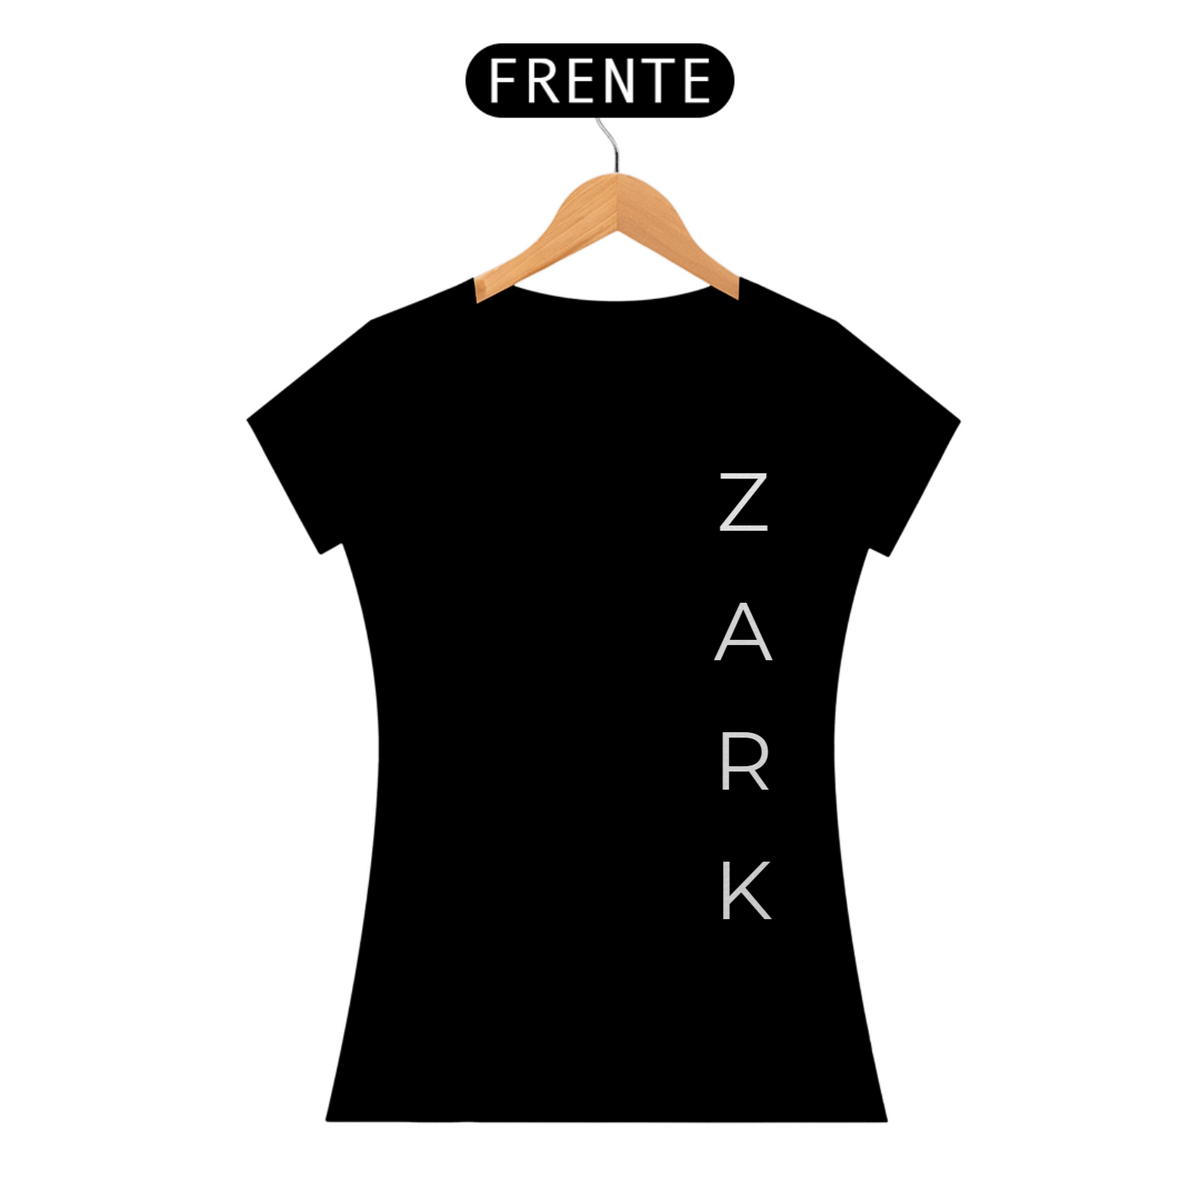 Nome do produto: Baby Long Day One Zark Wear (Lateral Branca)